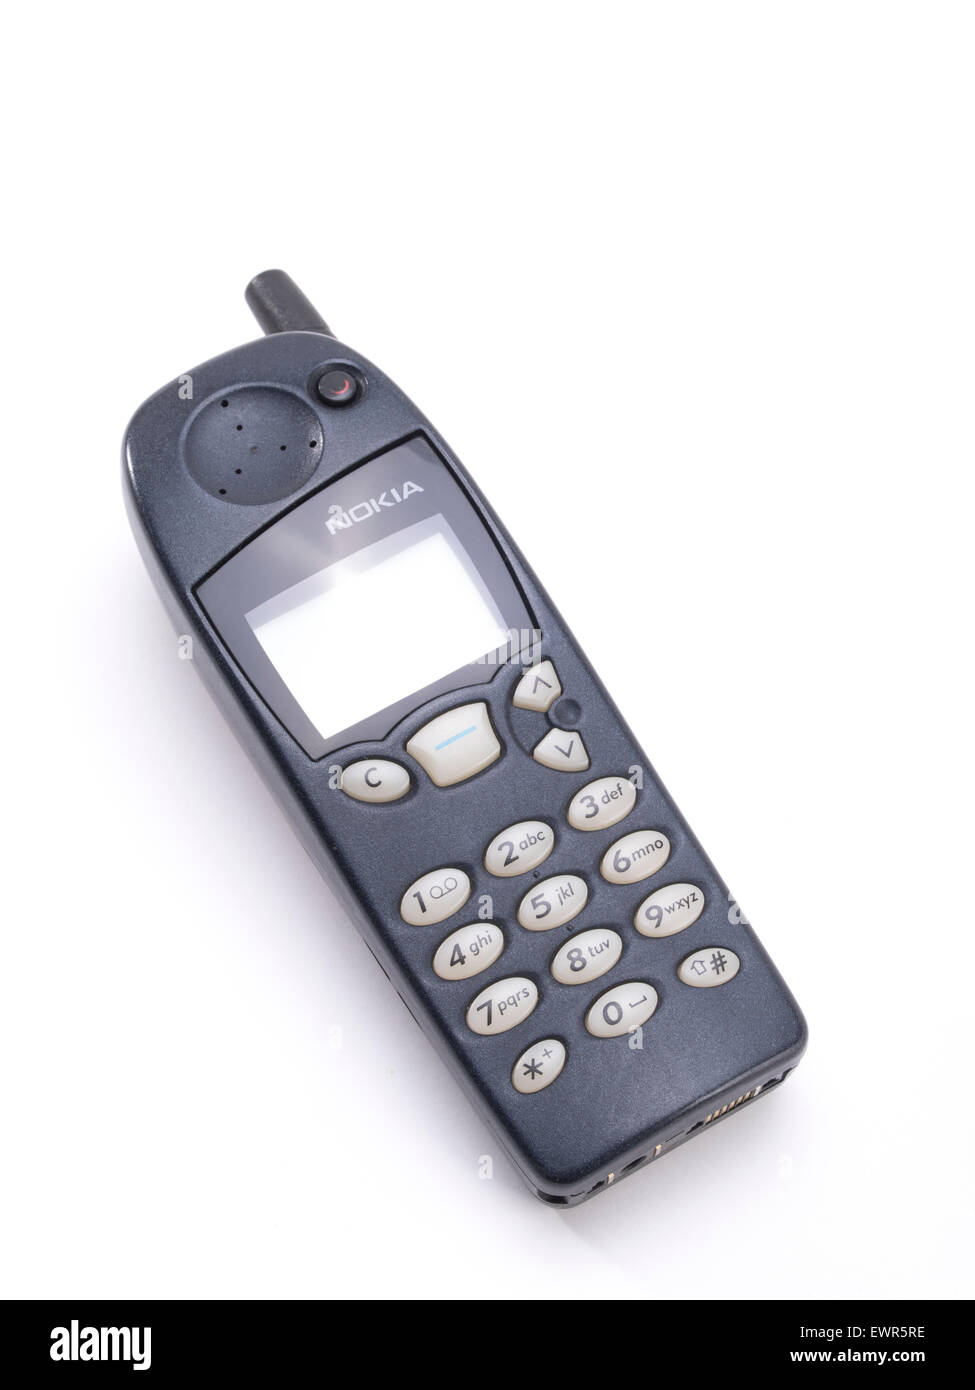 Nokia 5110, téléphone portable GSM, présenté par Nokia en mars 1998 Banque D'Images